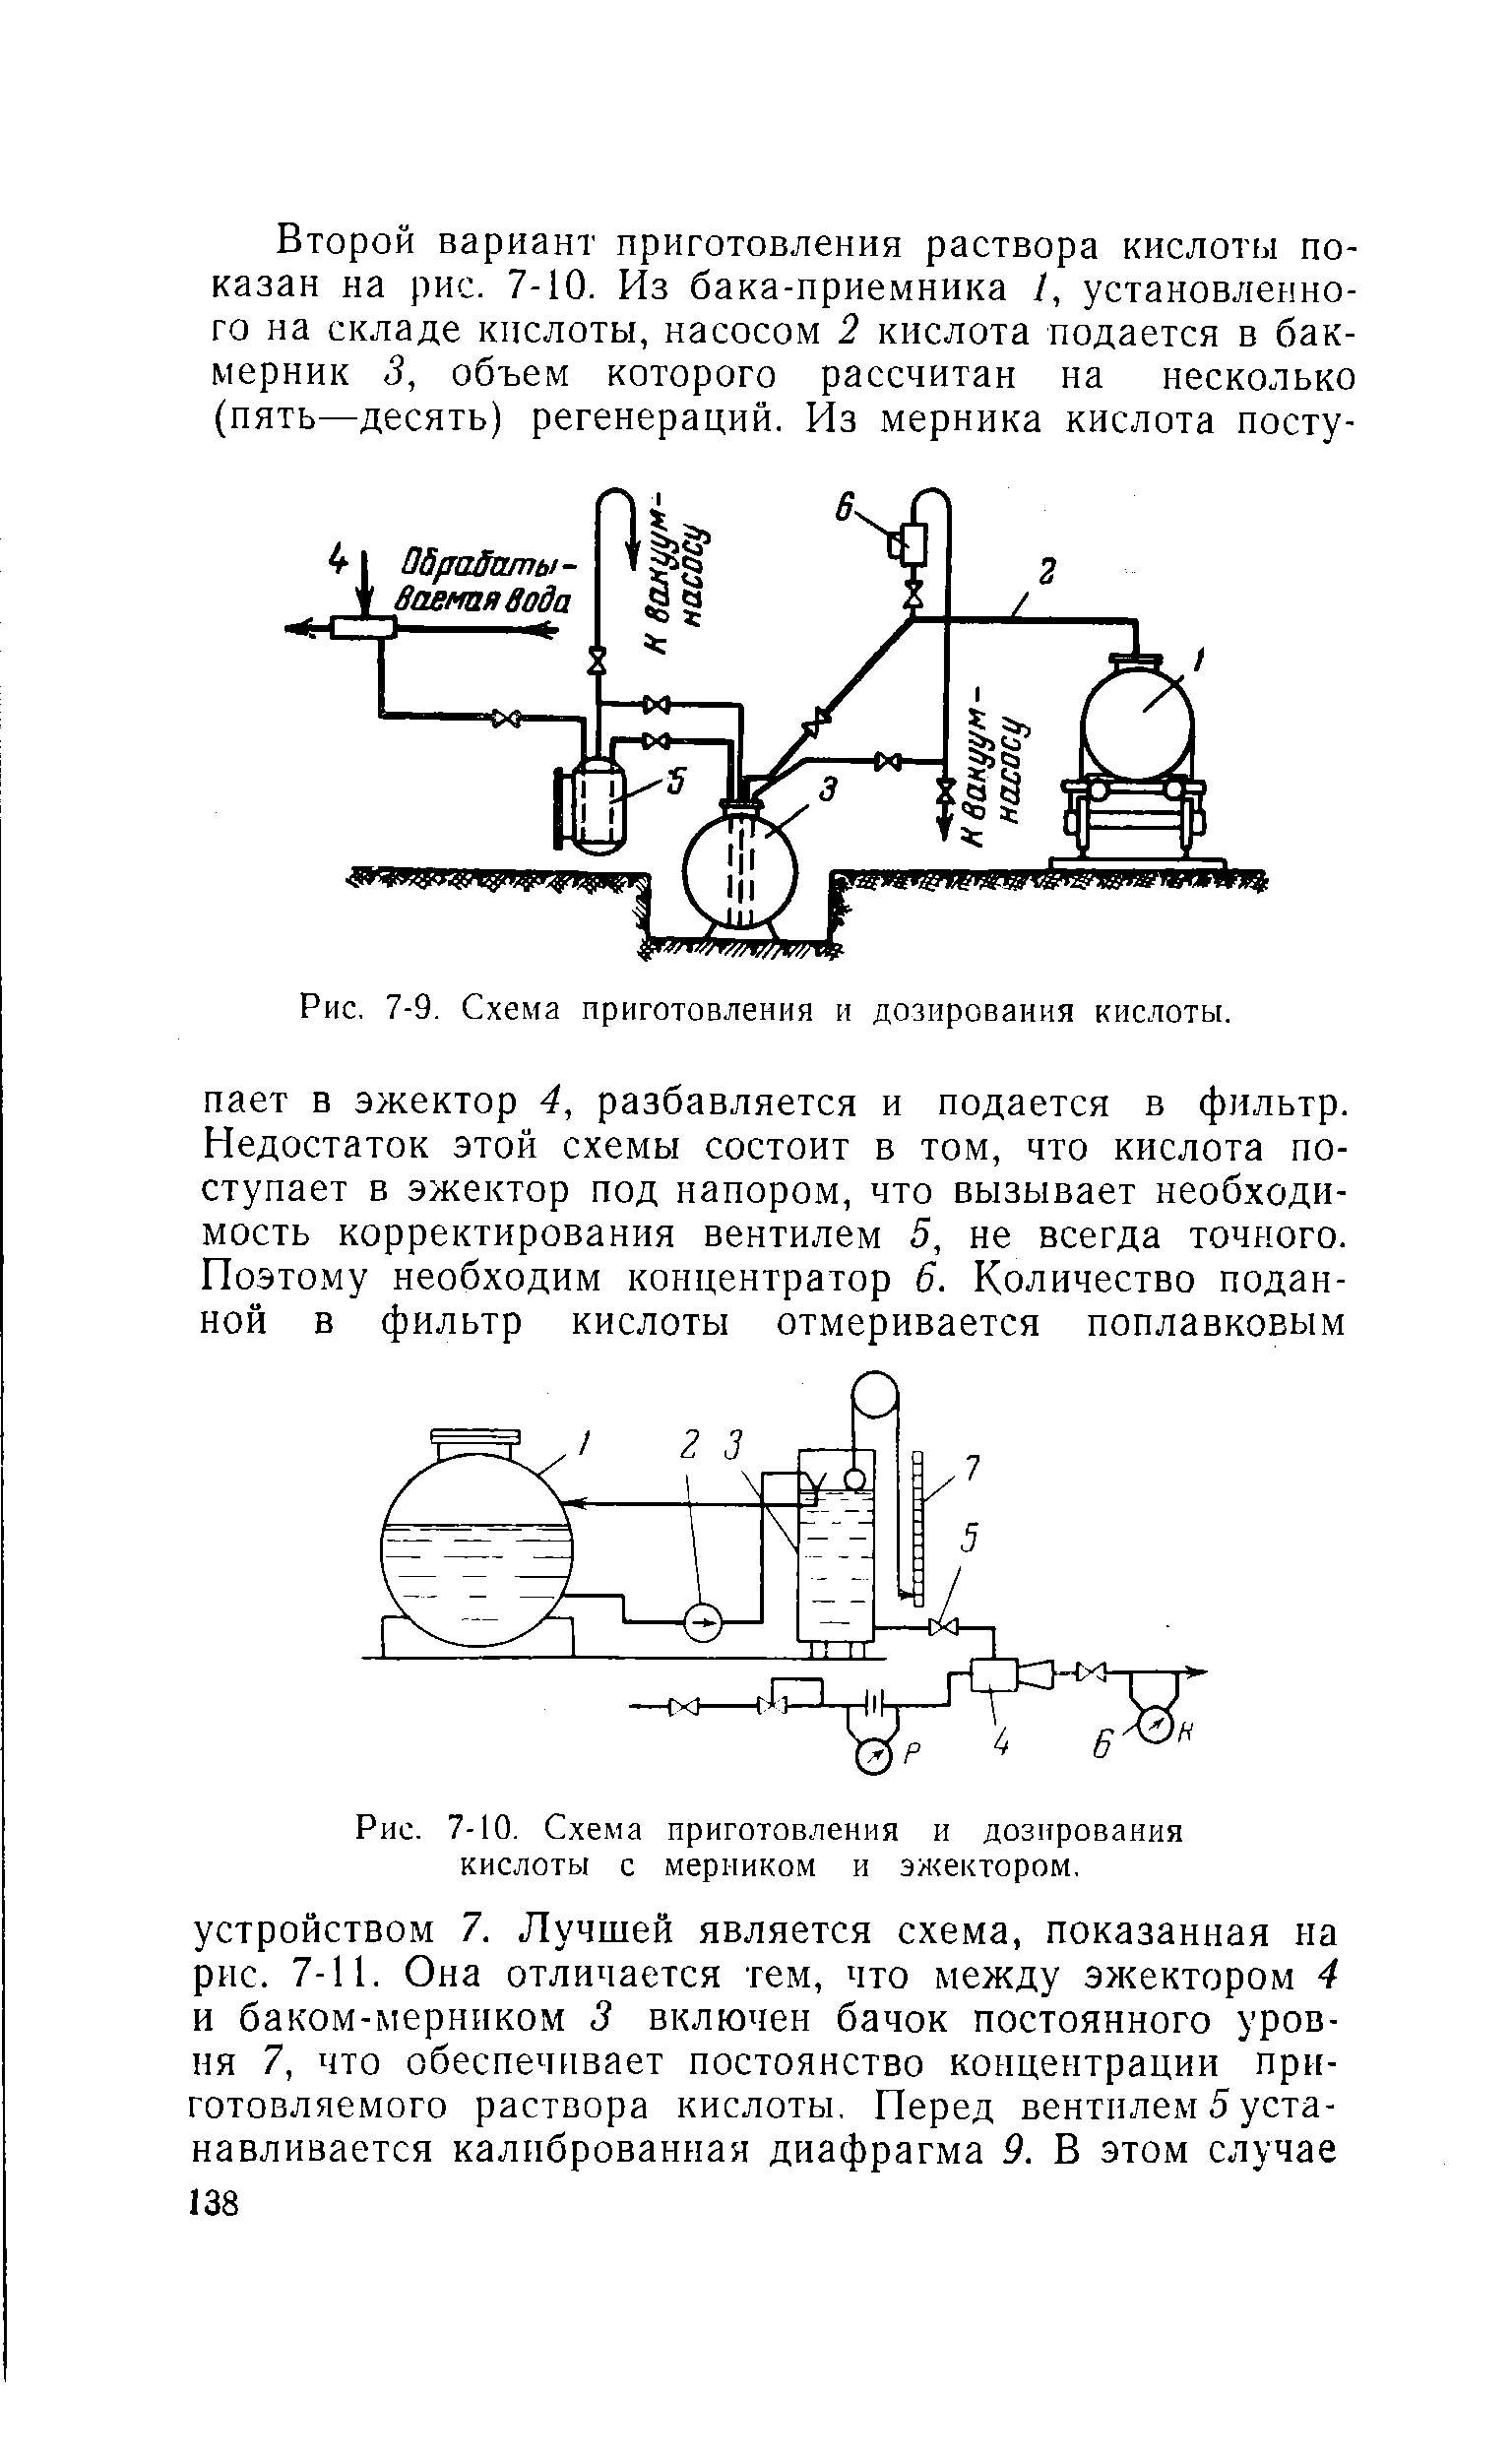 Рис. 7-10. Схема приготовления и дозирования кислоты с мерником и эн<ектором.
